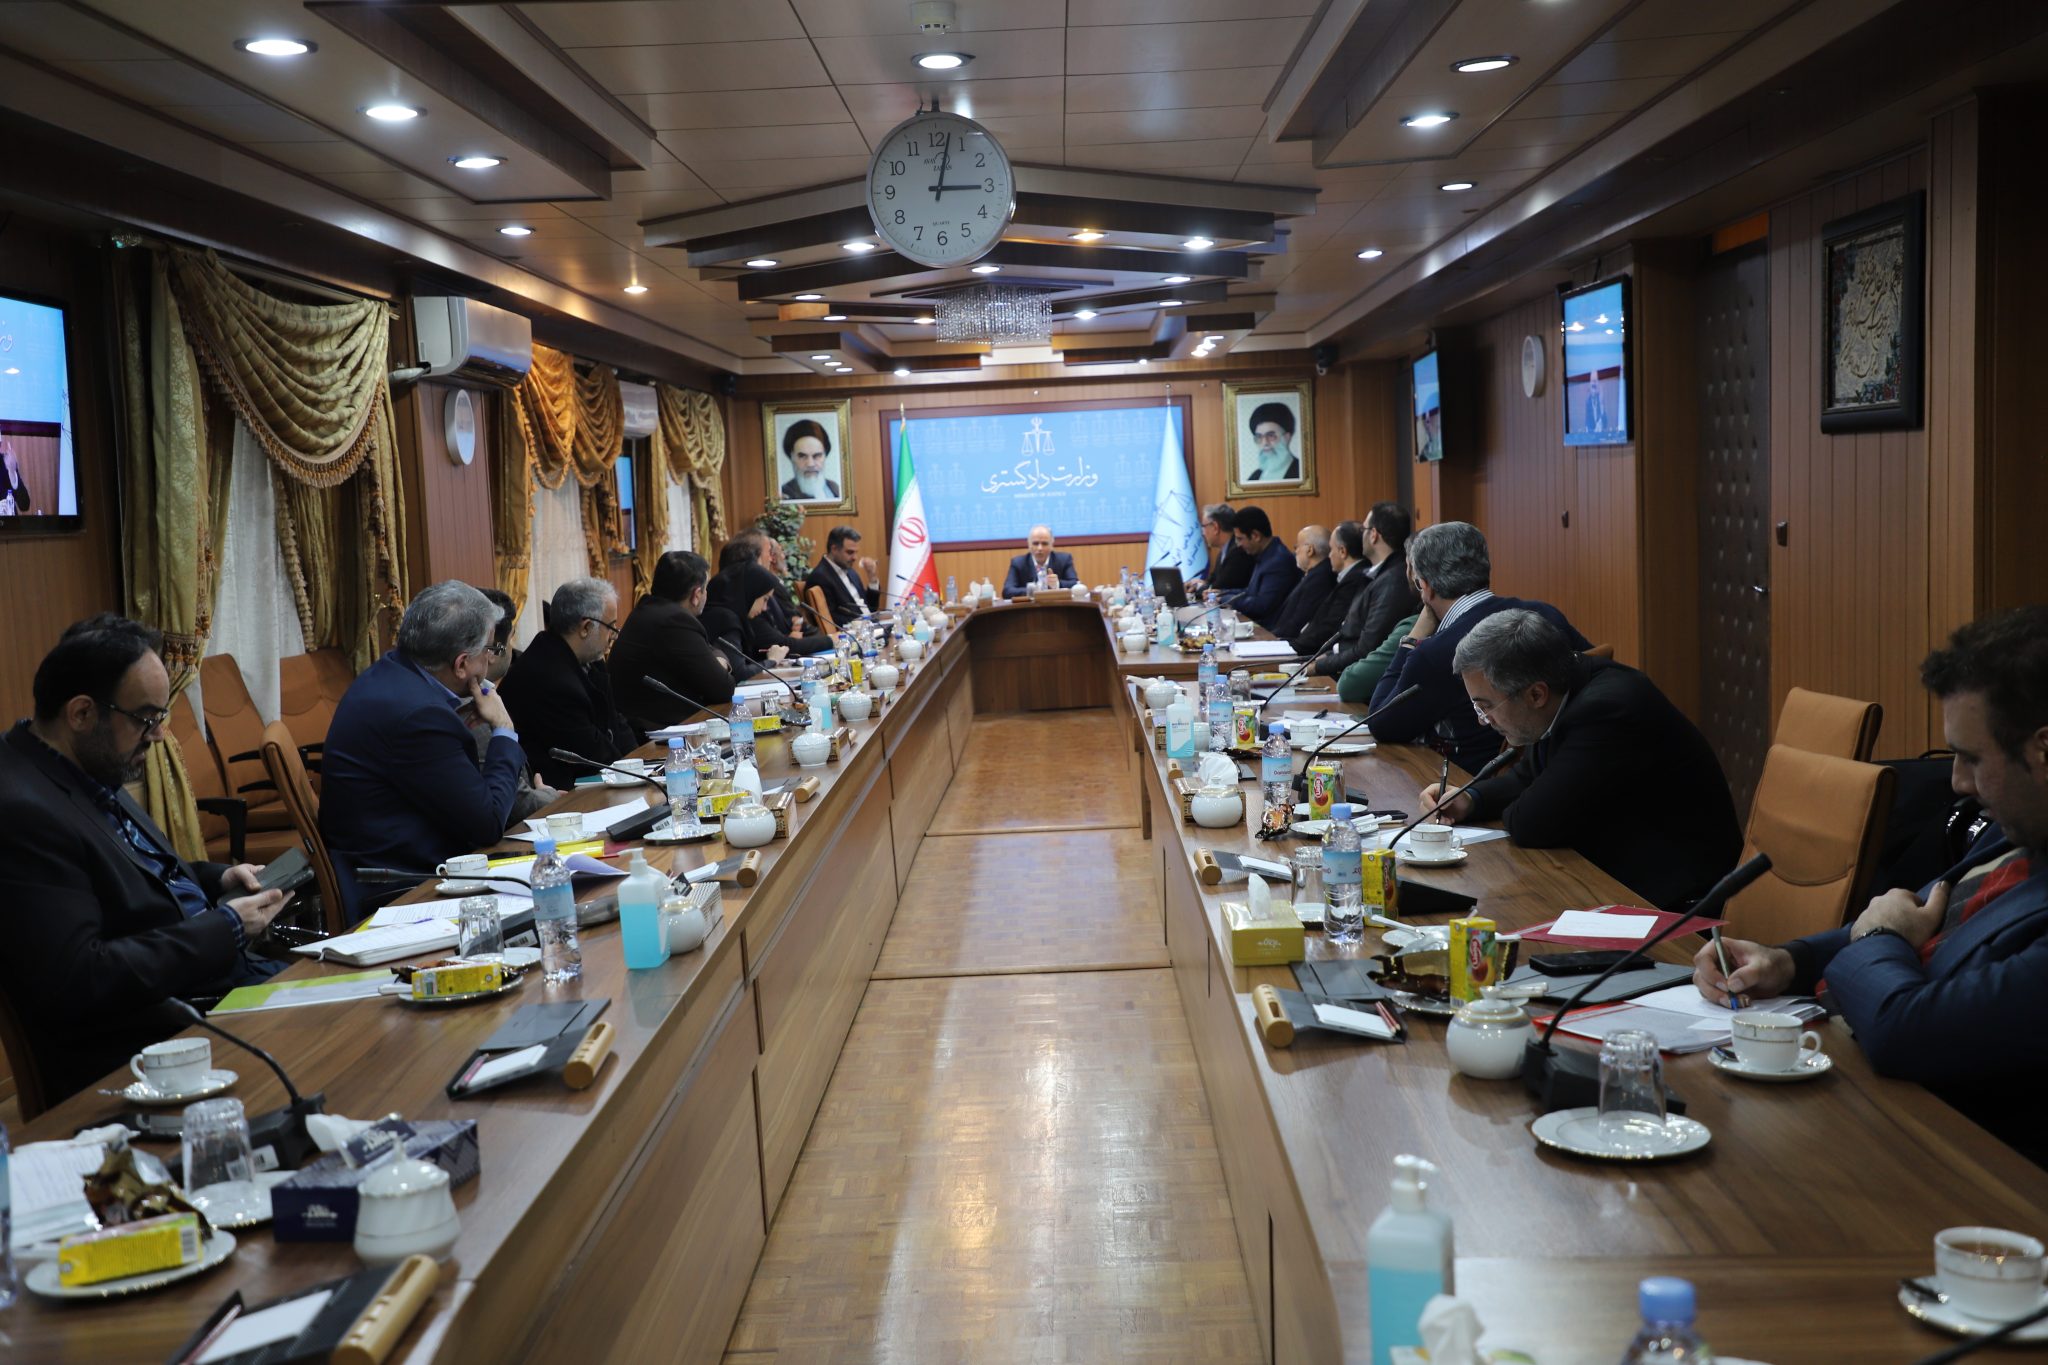 جلسه شورای مرجع ملی کنوانسیون مبارزه فساد با حضور وزیر دادگستری برگزار شد